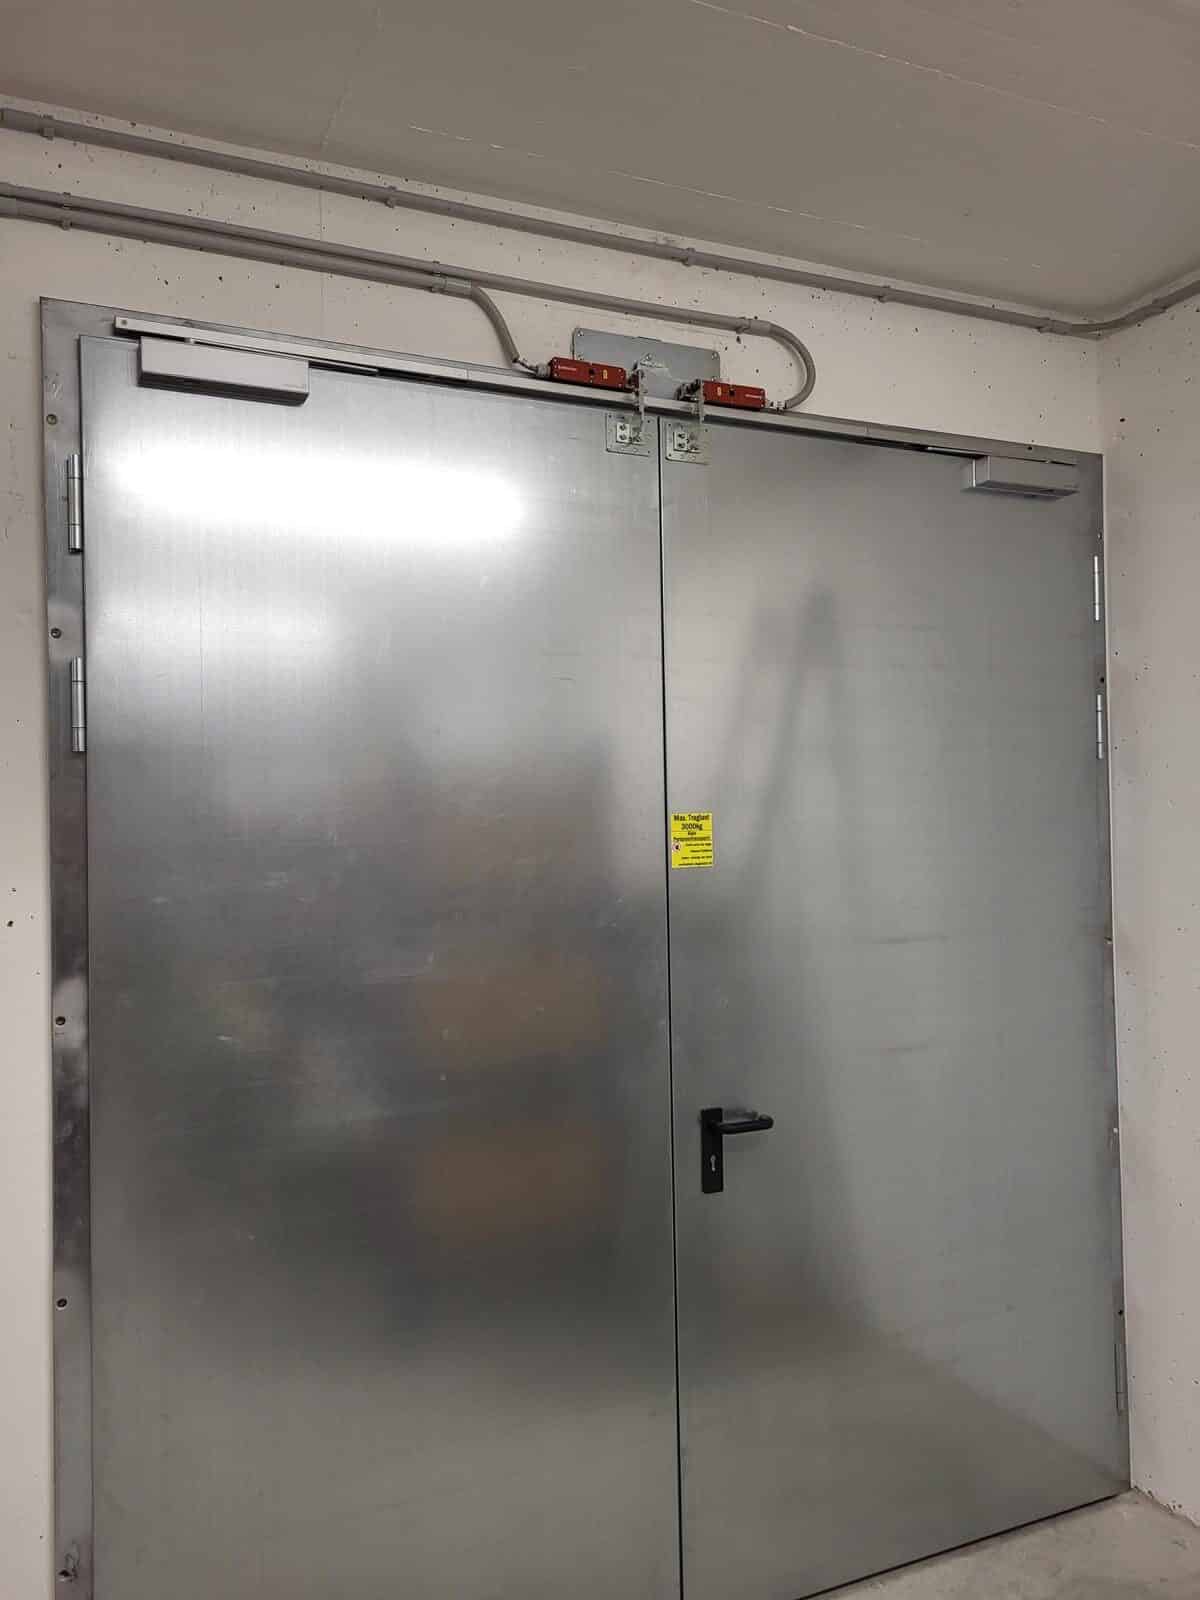 Una porta di metallo in un garage a cui è collegato un tavolo elevatore per carichi pesanti.